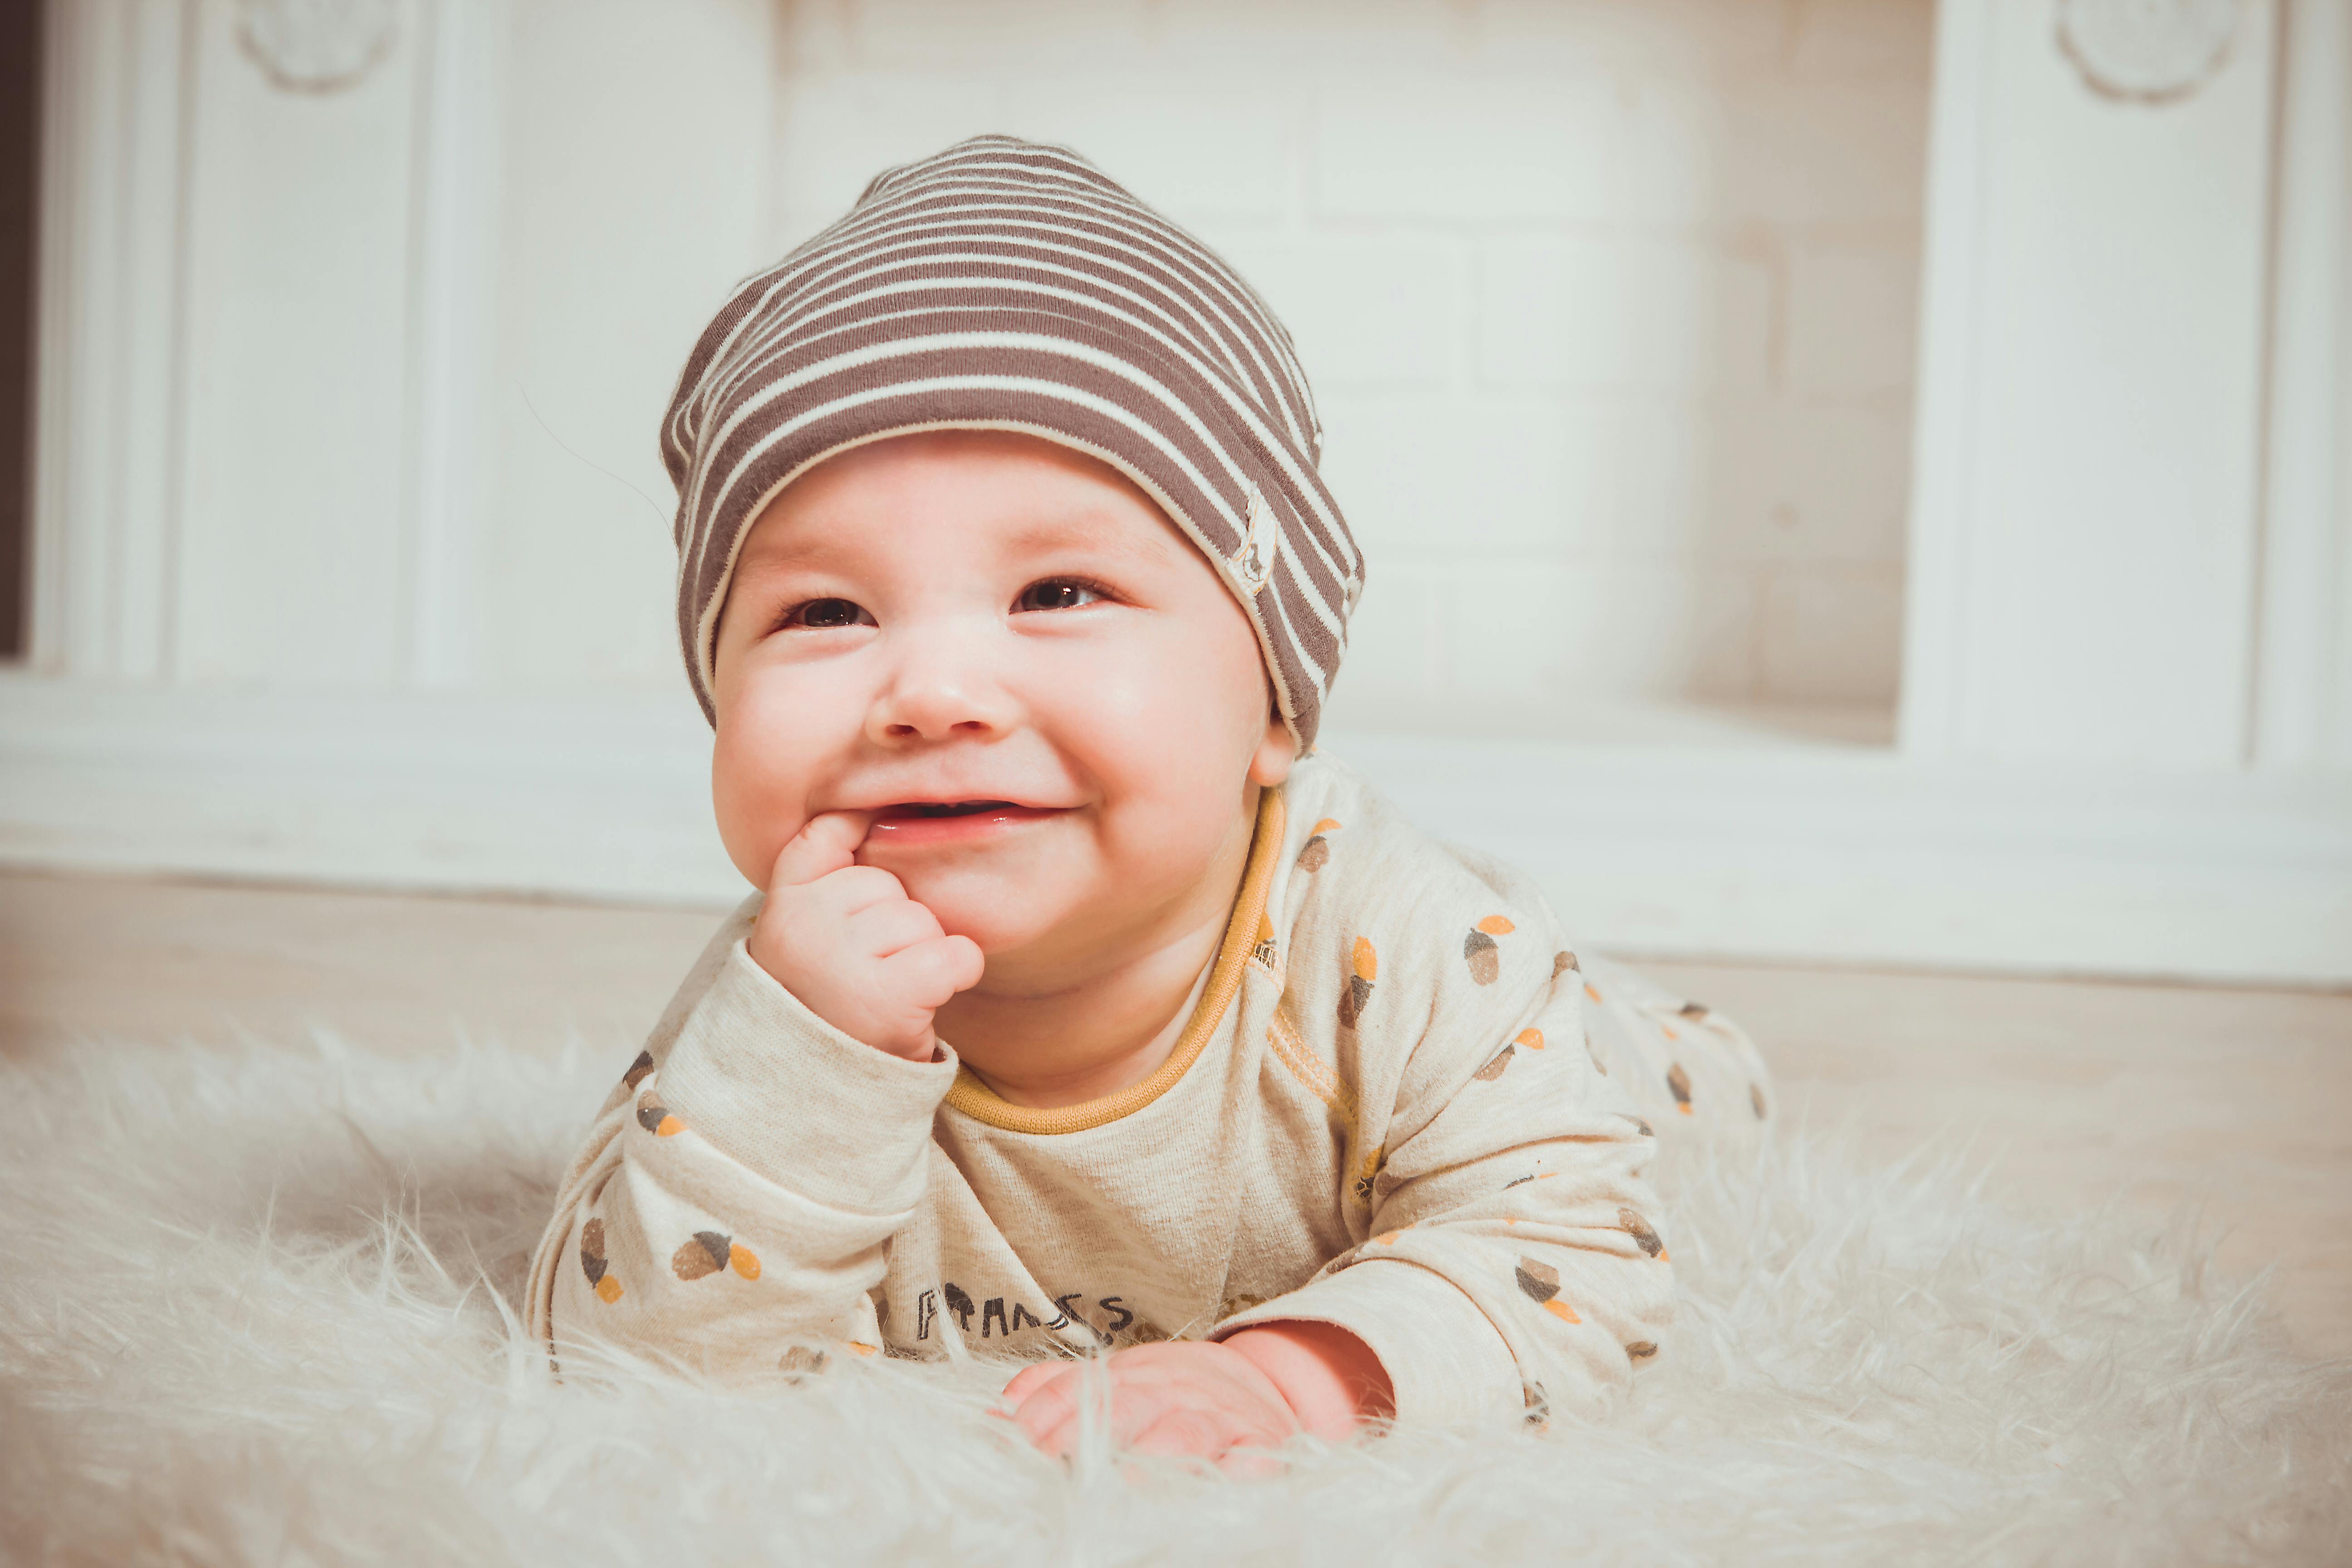 cutest baby boy smiling